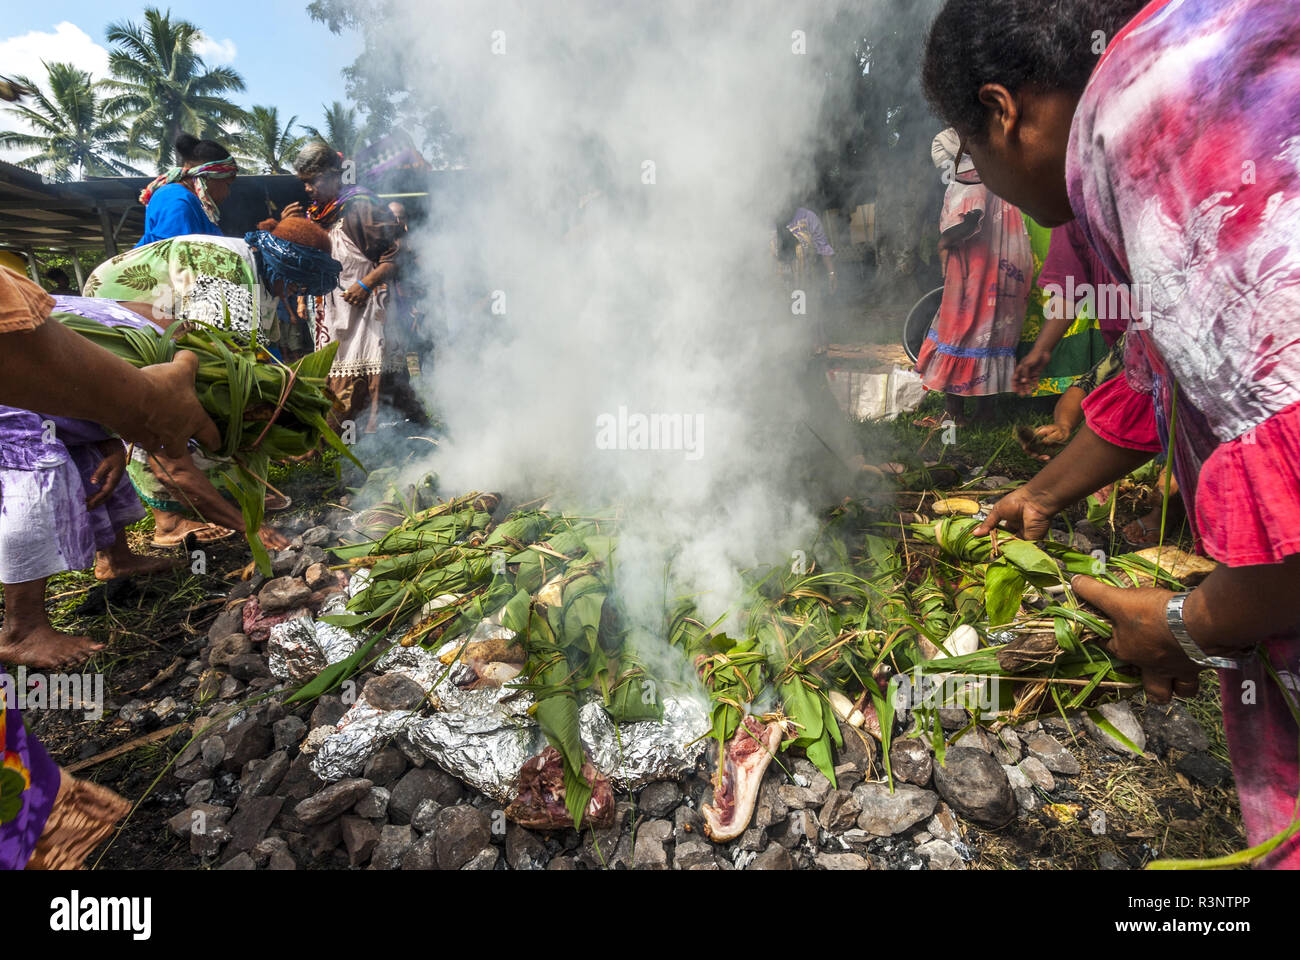 Kanak Frauen mit Süßkartoffeln auf Feuer gehüllt. Kanak traditioneller Ofen  mit schmoren. Fest des neuen Yam. Stamm Gohapin. Neukaledonien  Stockfotografie - Alamy